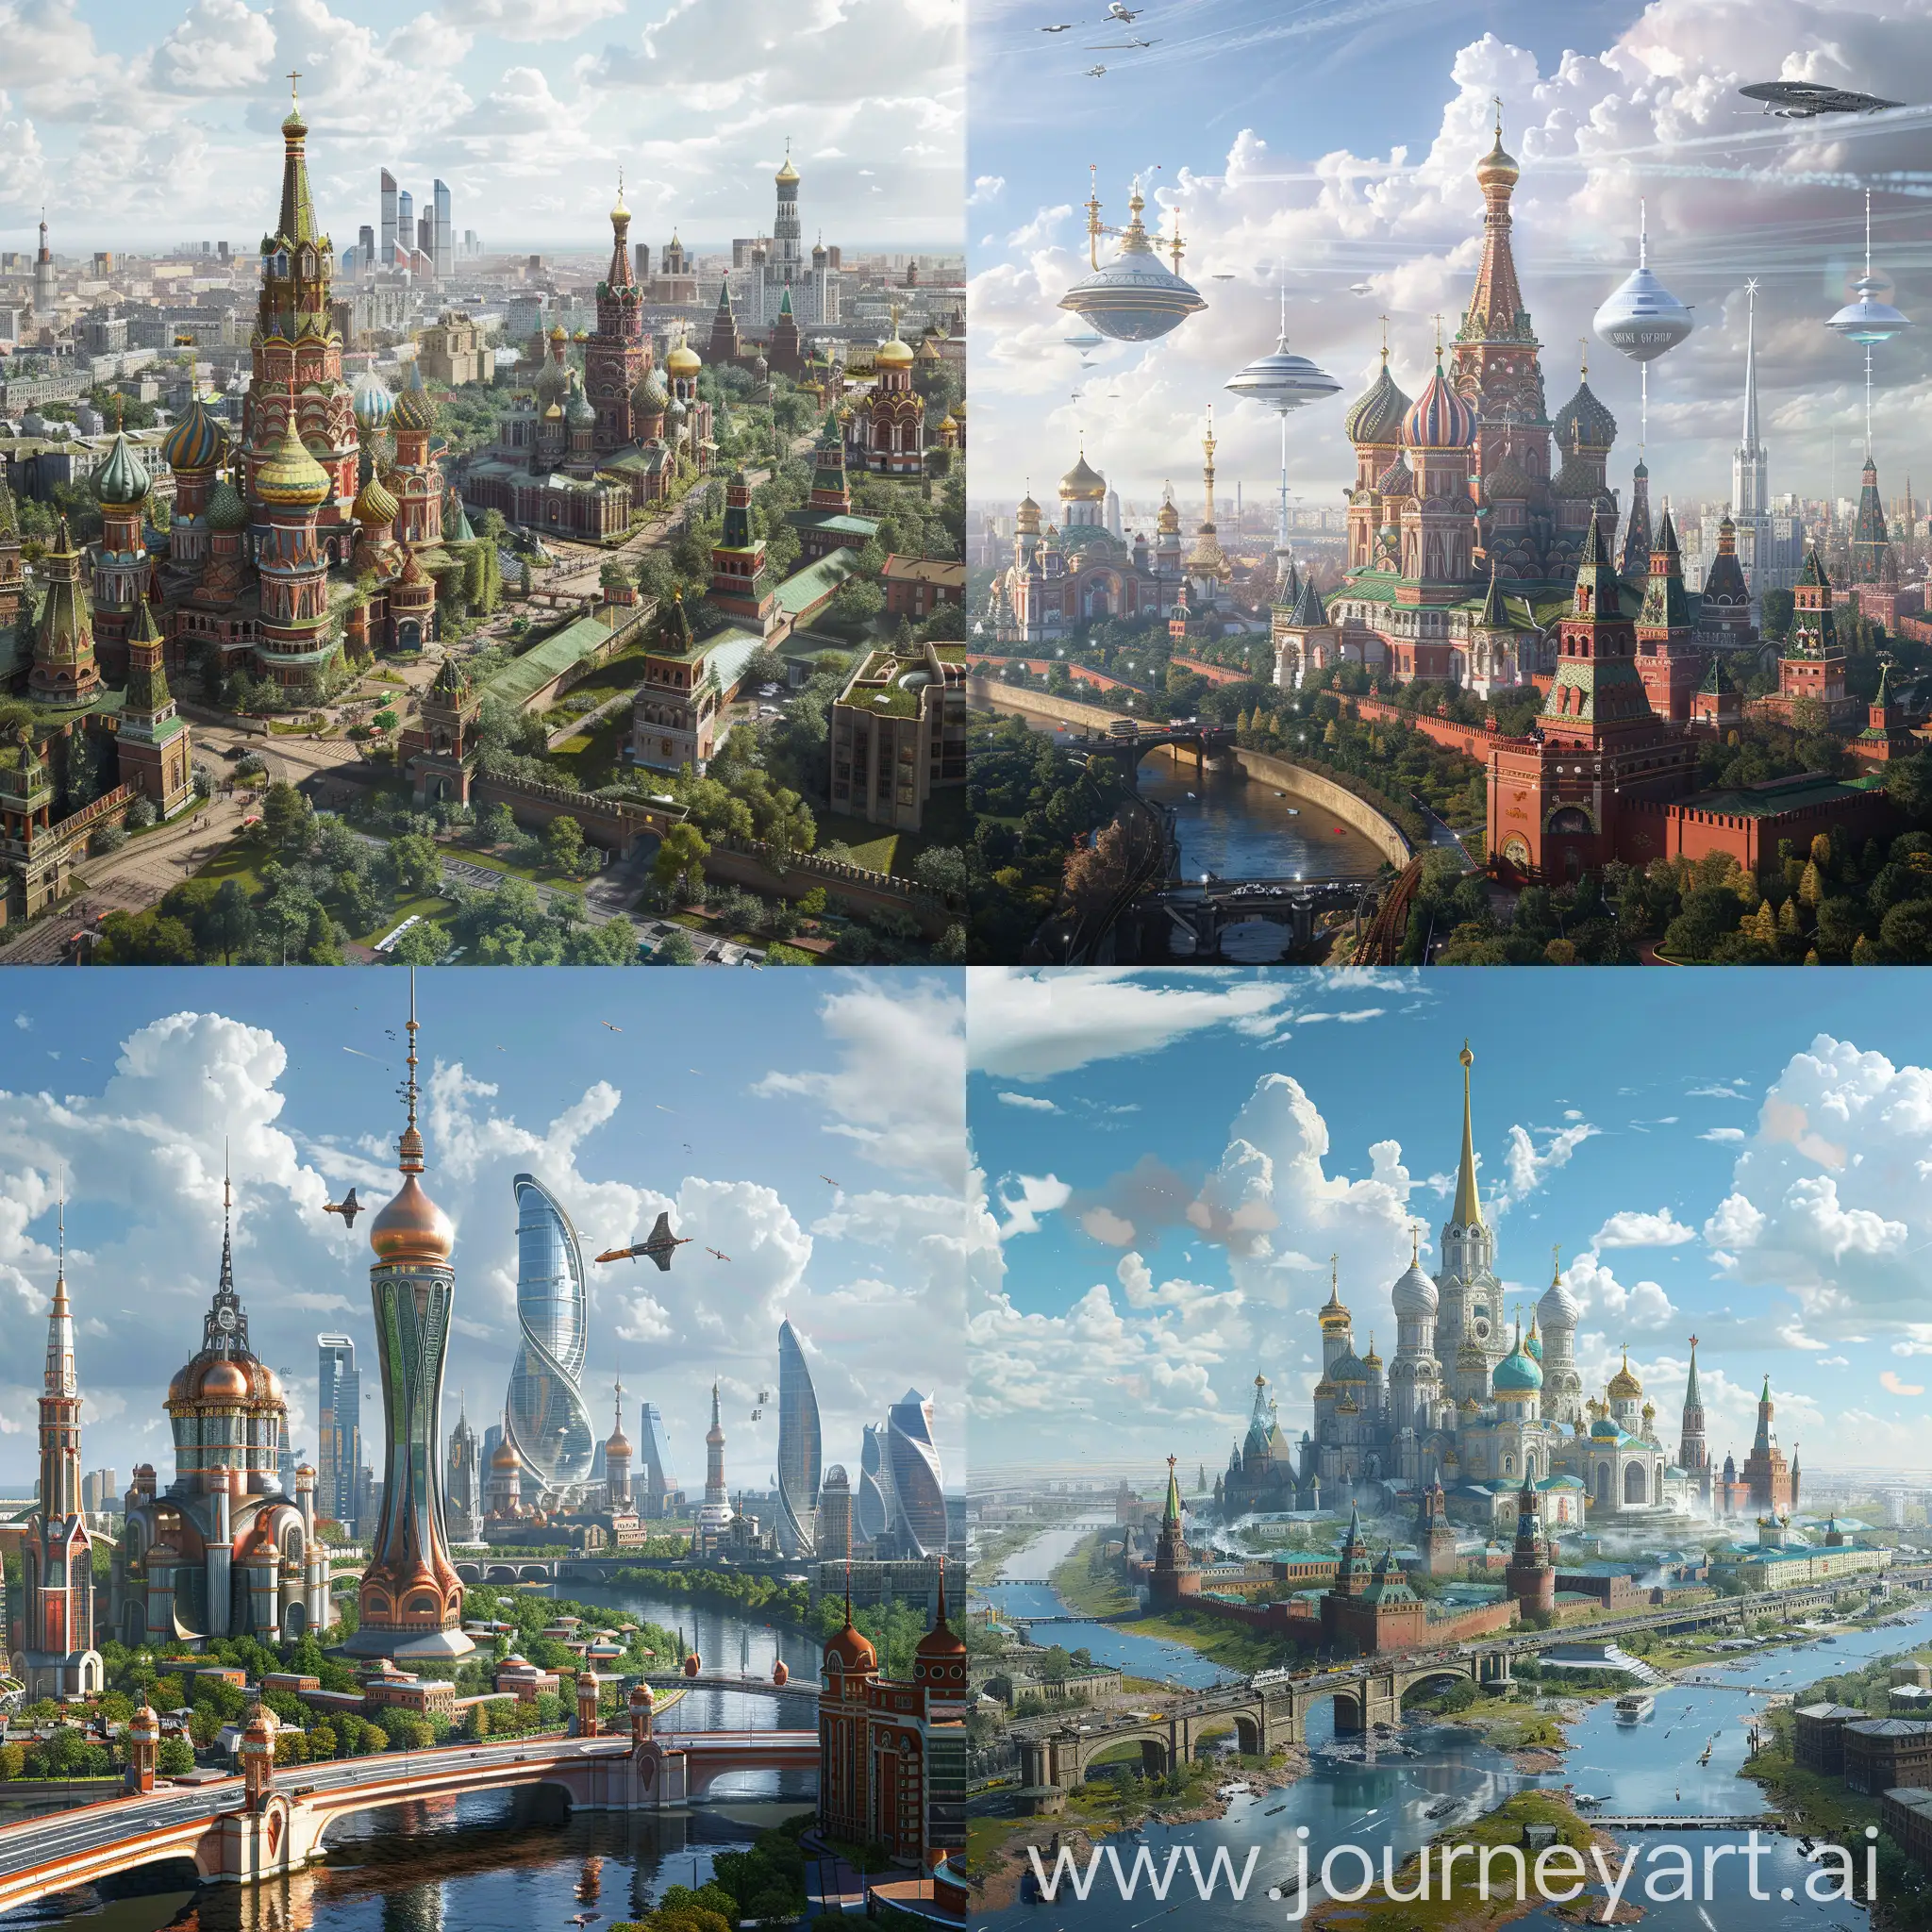 Futuristic-Russian-Utopia-Vision-of-2075